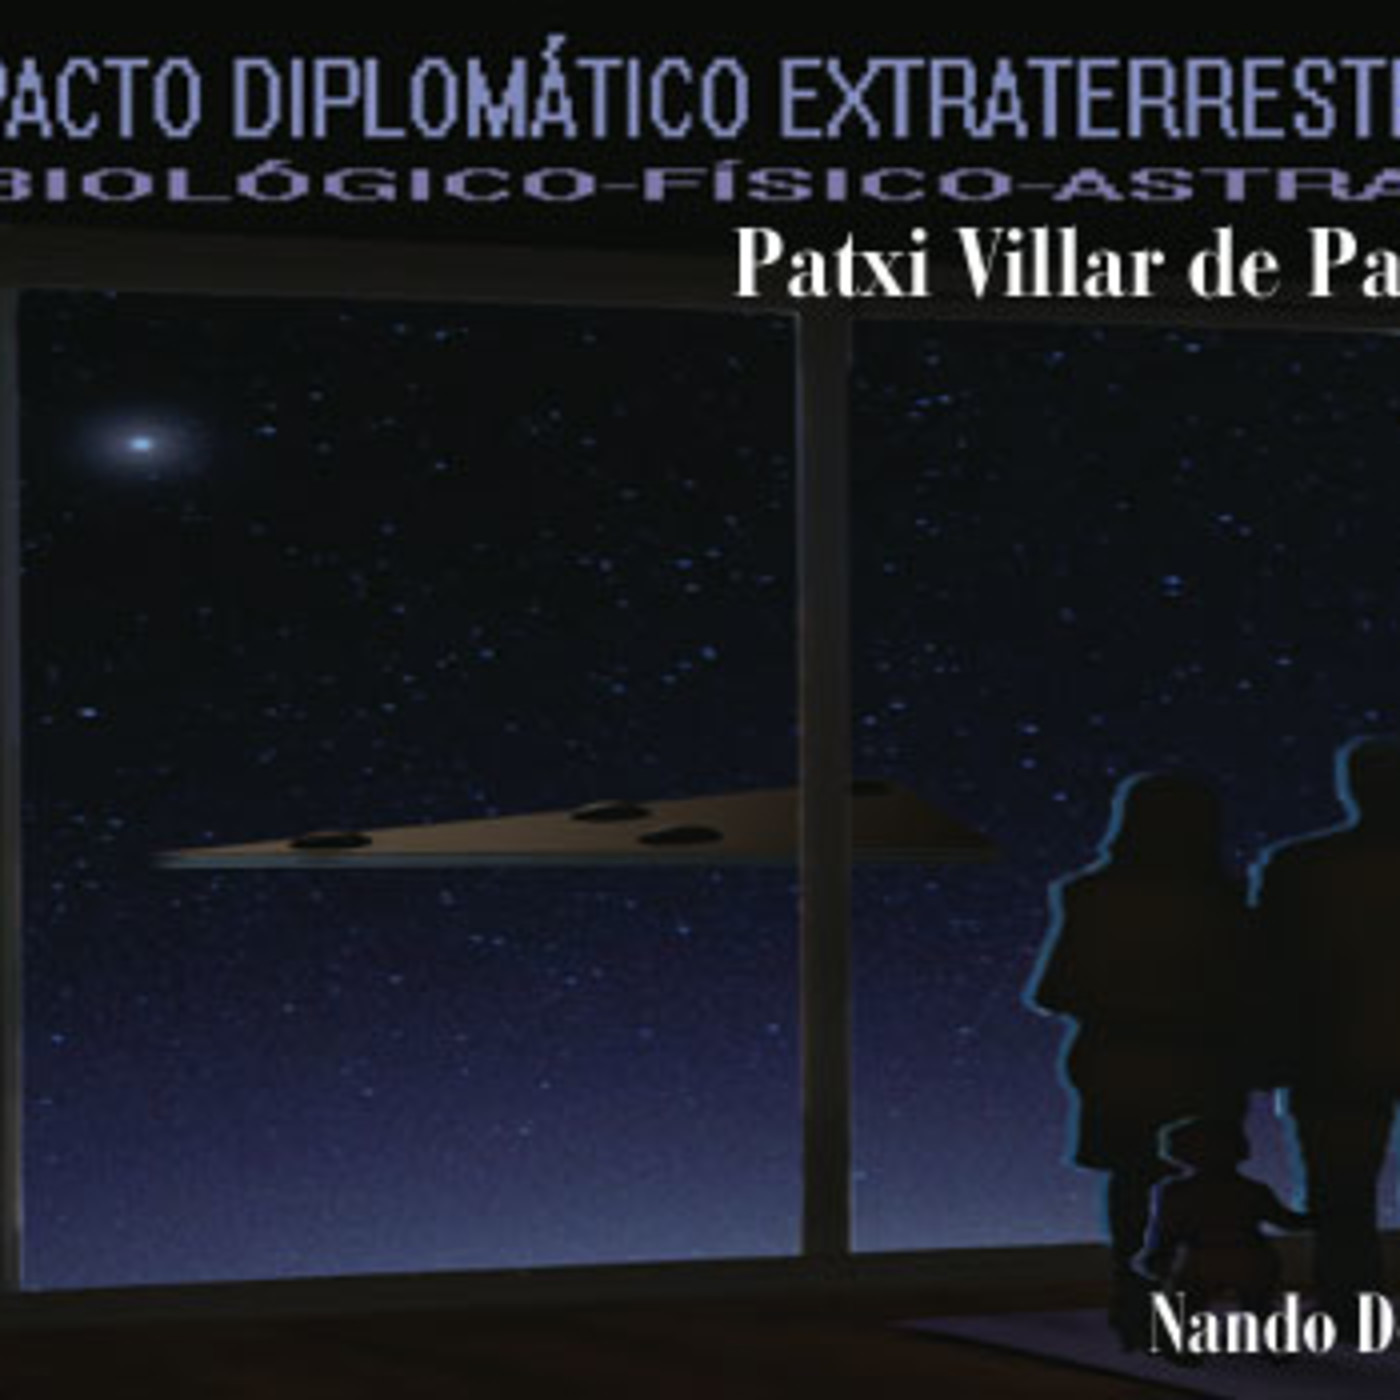 La Puerta Al Universo - Pacto Diplomatico Extraterrestre con Patxi Villar de Paul